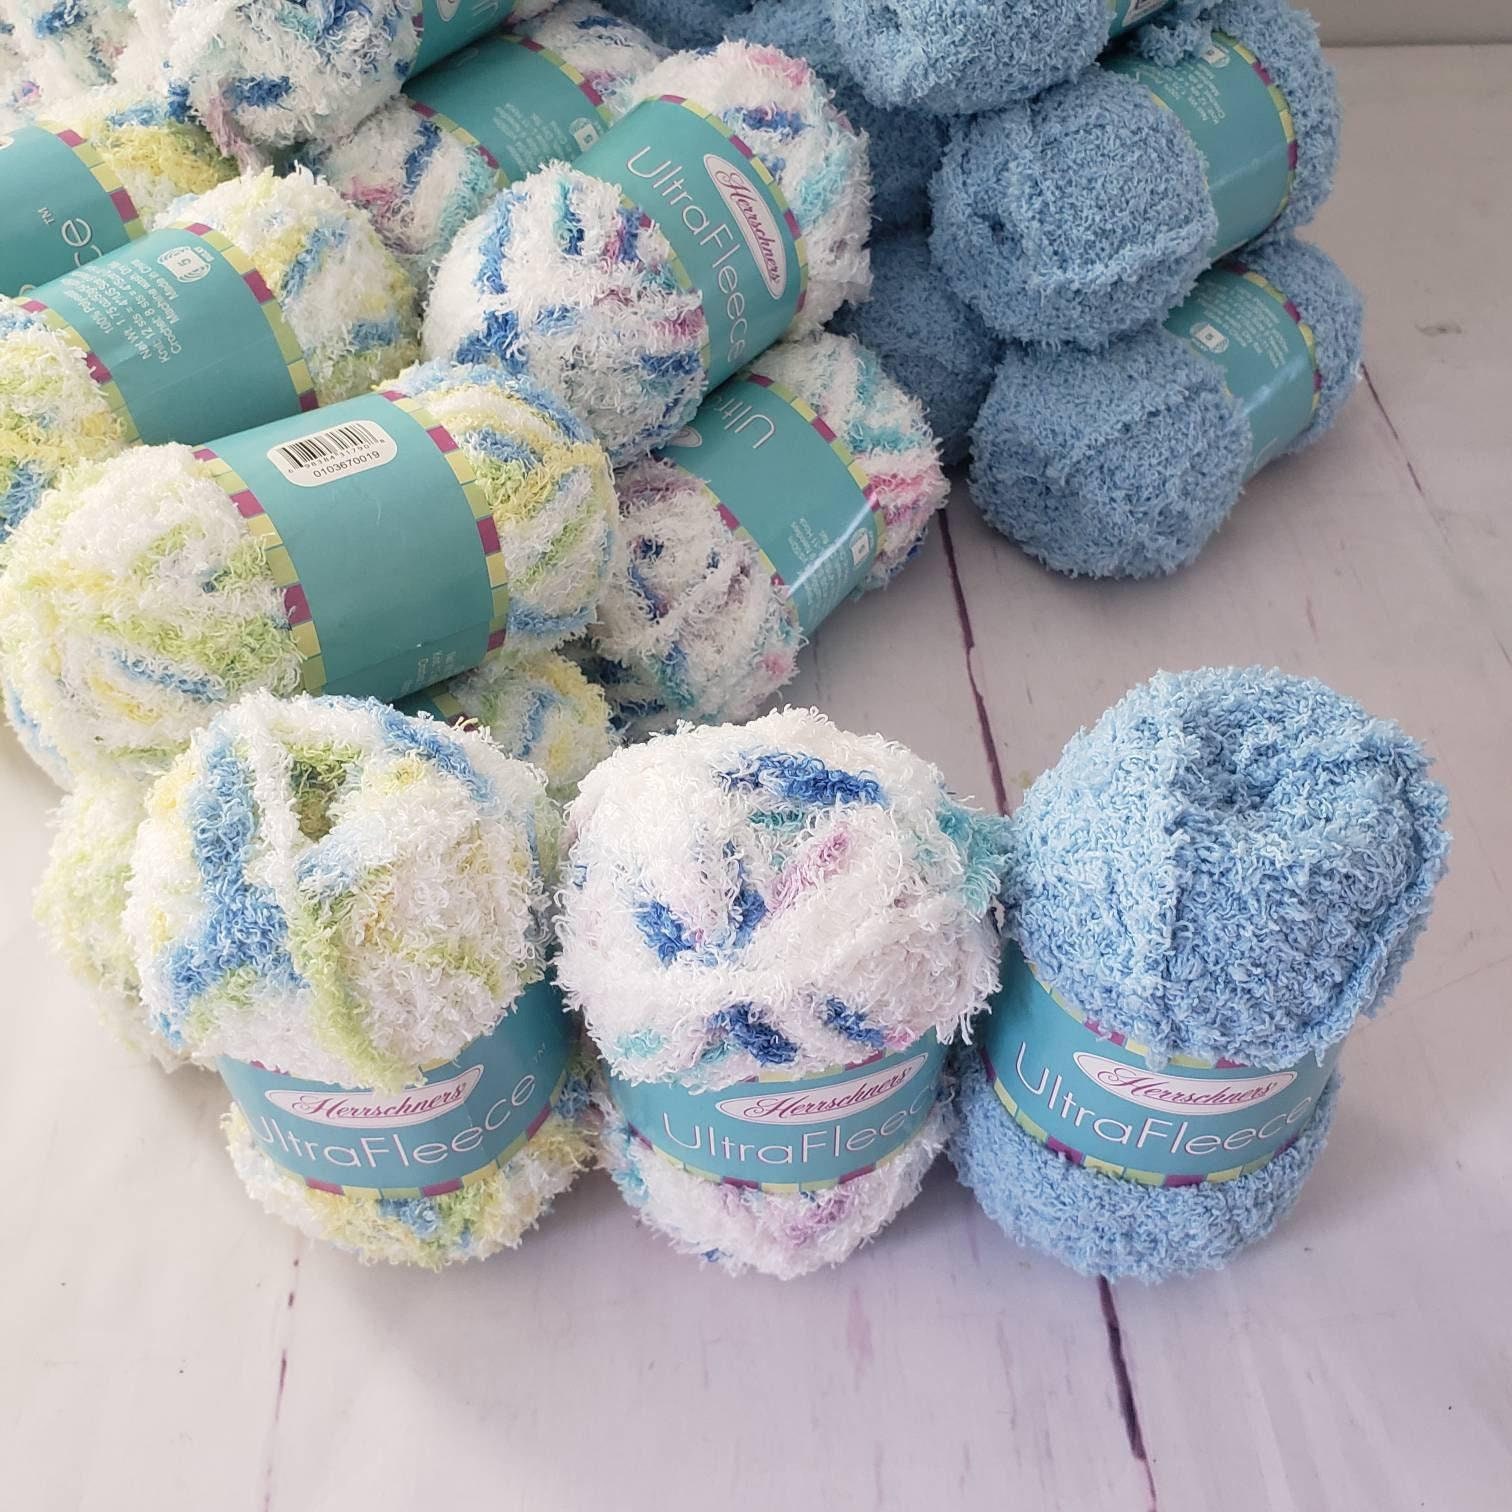 Herrschners Poinsettia - Buy All 3 & Save Crochet Kit